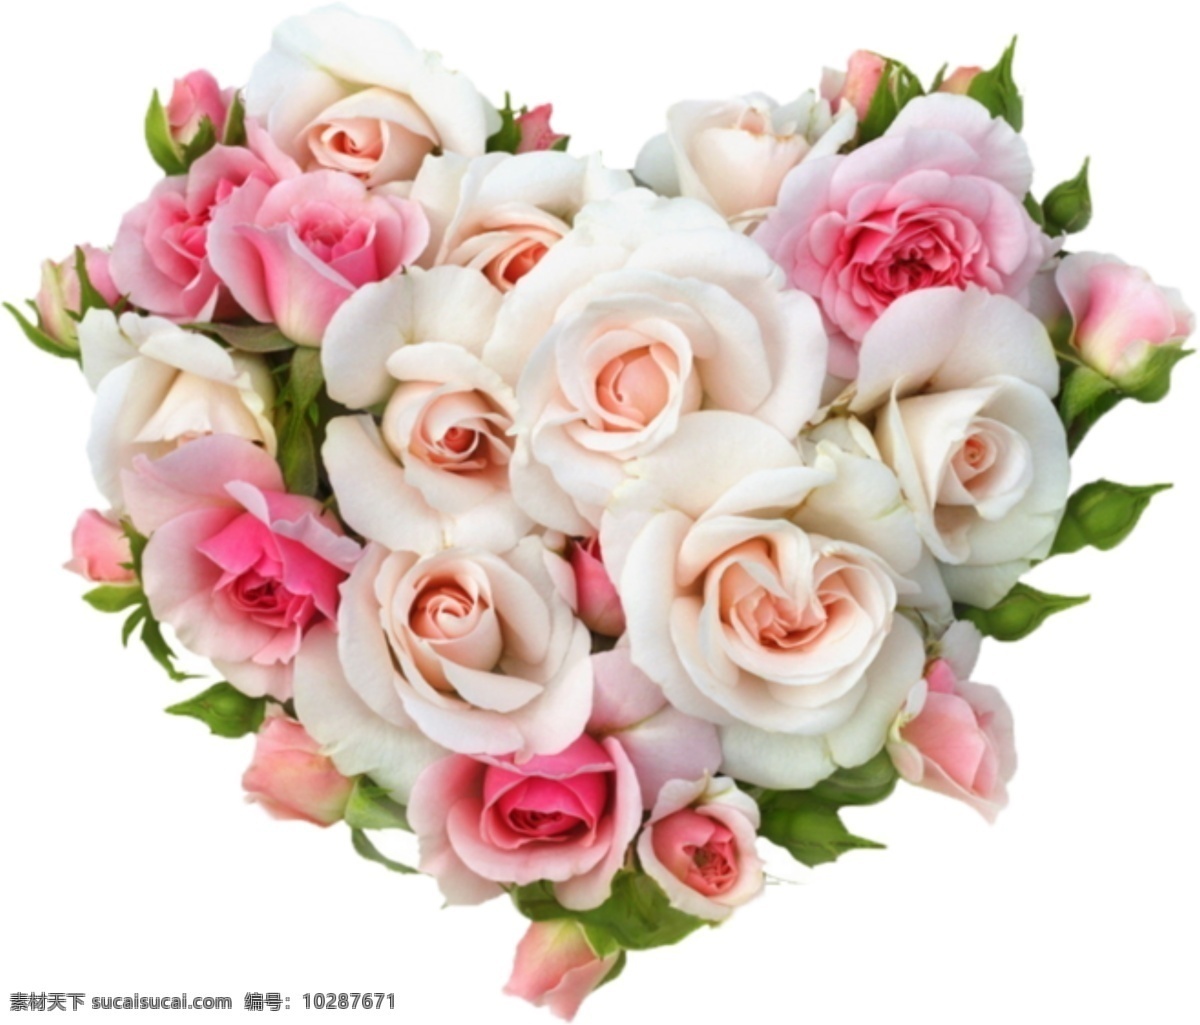 心形花 心形 花 玫瑰 月季 鲜花 一束鲜花 一捧鲜花 一束花 一捧花 手捧花 素材图